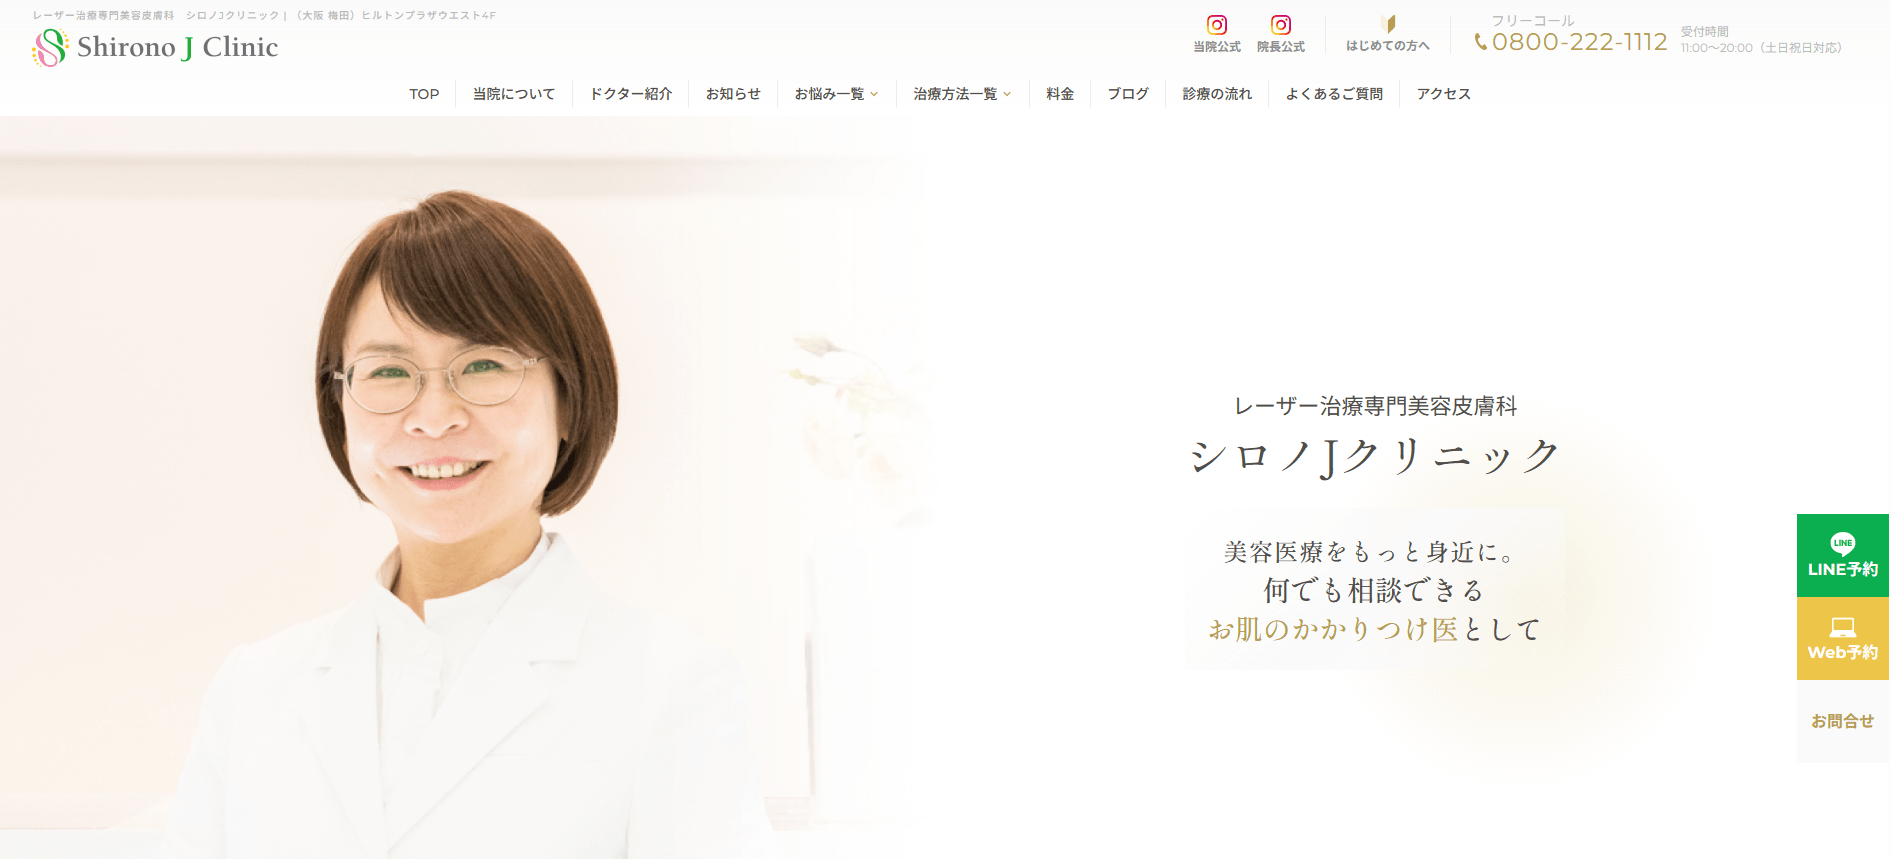 大阪府で評判のFAGA（女性薄毛治療）におすすめのクリニック10選 シロノJクリニック